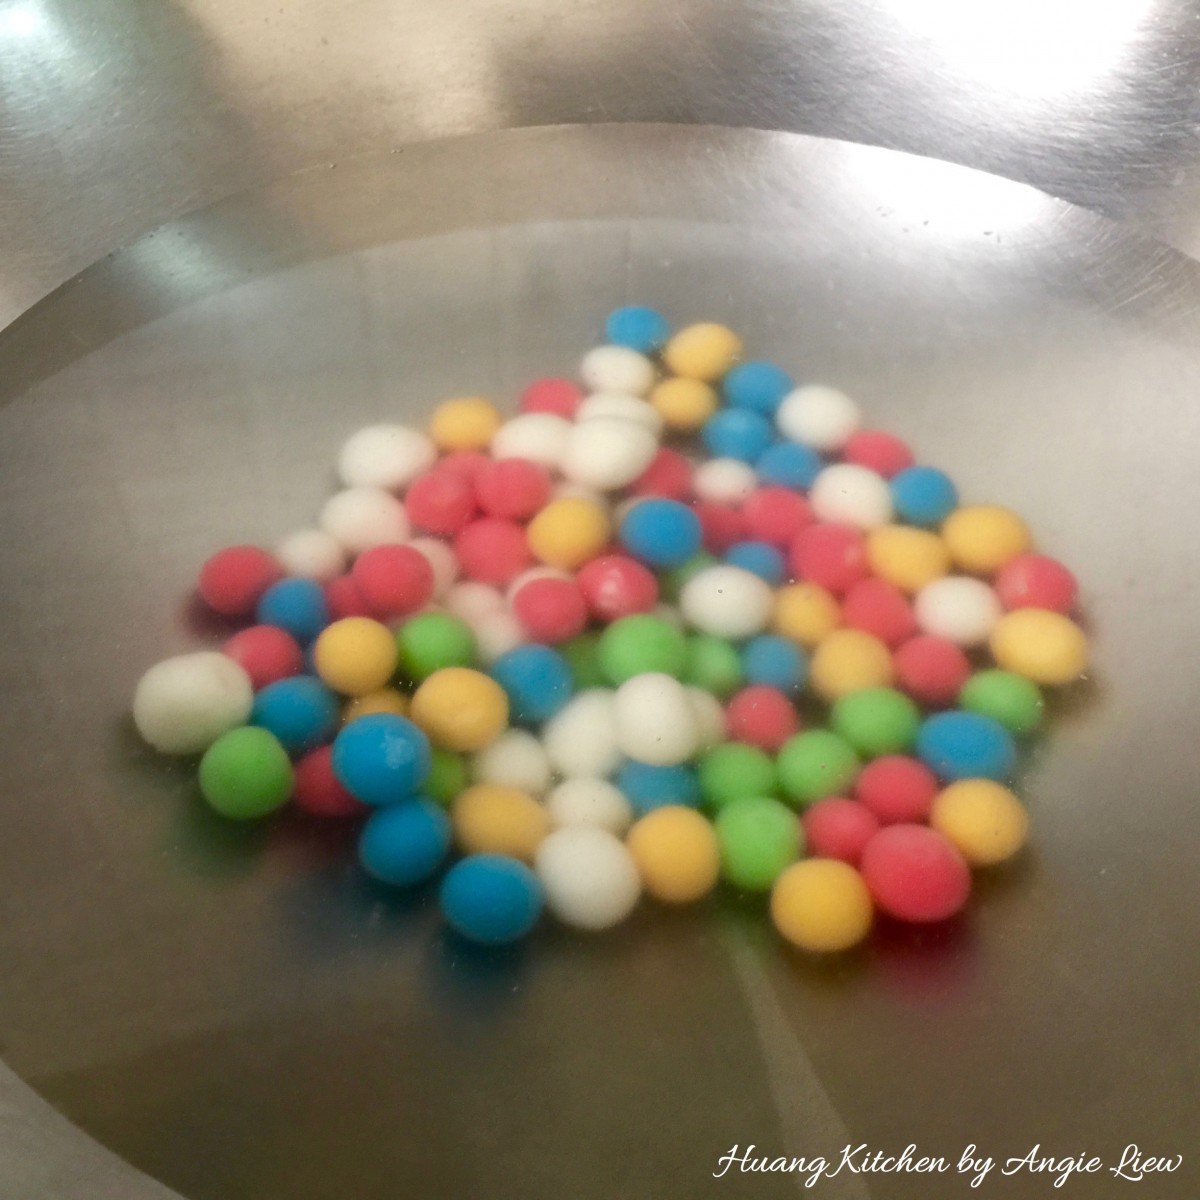 Sweet Glutinous Rice Balls Recipe (Tang Yuan) - drop rice balls into water